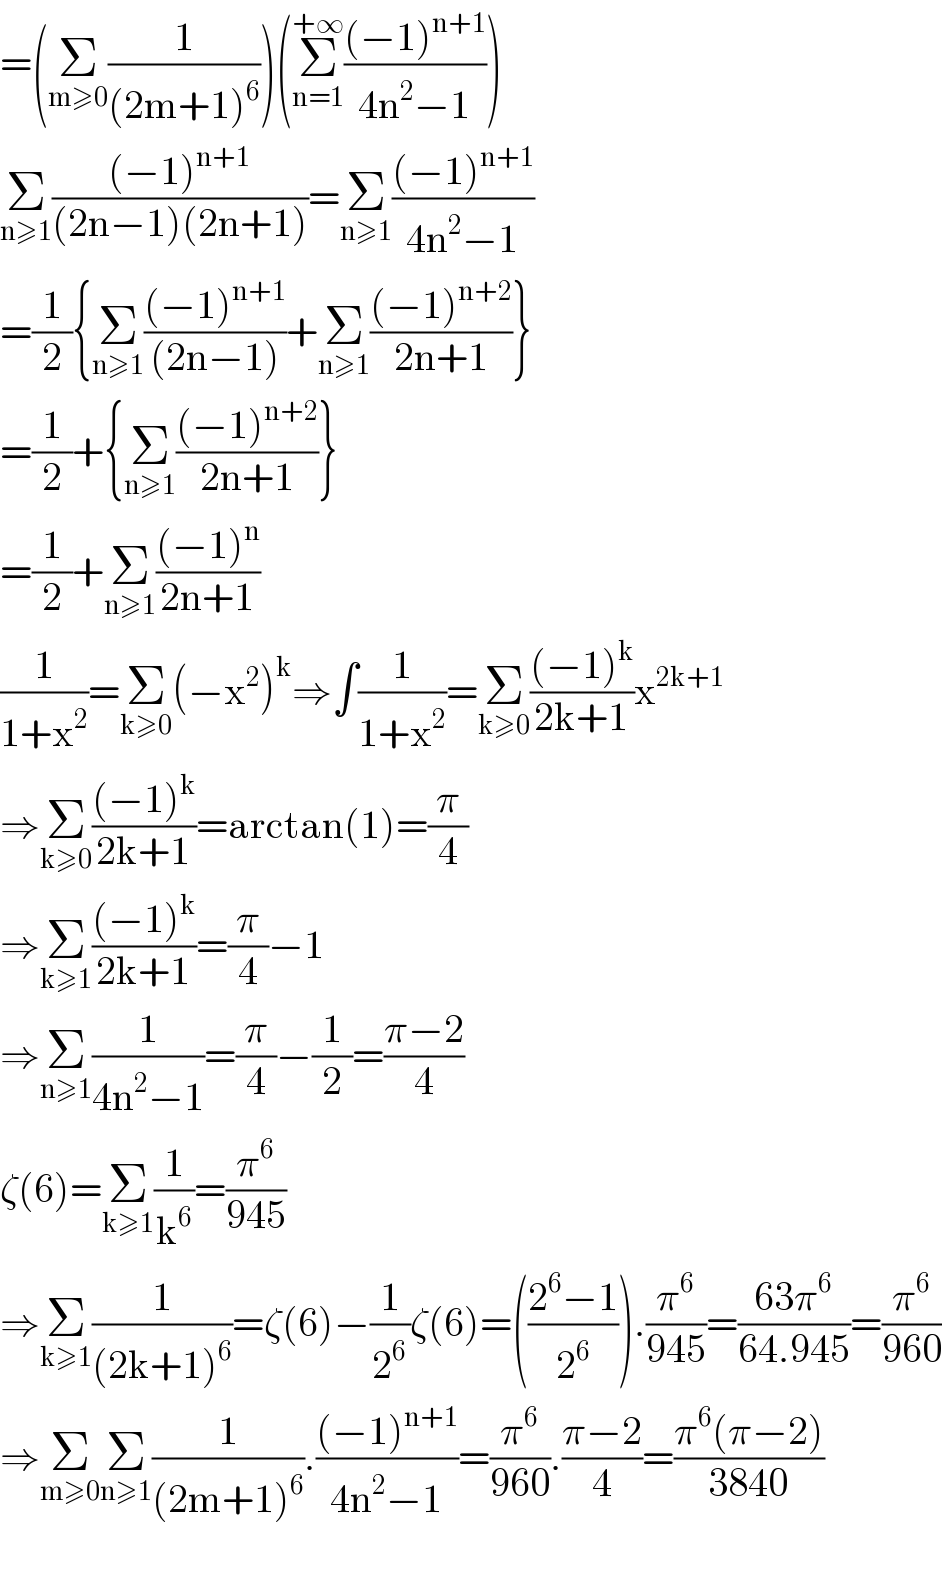 =(Σ_(m≥0) (1/((2m+1)^6 )))(Σ_(n=1) ^(+∞) (((−1)^(n+1) )/(4n^2 −1)))  Σ_(n≥1) (((−1)^(n+1) )/((2n−1)(2n+1)))=Σ_(n≥1) (((−1)^(n+1) )/(4n^2 −1))  =(1/2){Σ_(n≥1) (((−1)^(n+1) )/((2n−1)))+Σ_(n≥1) (((−1)^(n+2) )/(2n+1))}  =(1/2)+{Σ_(n≥1) (((−1)^(n+2) )/(2n+1))}  =(1/2)+Σ_(n≥1) (((−1)^n )/(2n+1))  (1/(1+x^2 ))=Σ_(k≥0) (−x^2 )^k ⇒∫(1/(1+x^2 ))=Σ_(k≥0) (((−1)^k )/(2k+1))x^(2k+1)   ⇒Σ_(k≥0) (((−1)^k )/(2k+1))=arctan(1)=(π/4)  ⇒Σ_(k≥1) (((−1)^k )/(2k+1))=(π/4)−1  ⇒Σ_(n≥1) (1/(4n^2 −1))=(π/4)−(1/2)=((π−2)/4)  ζ(6)=Σ_(k≥1) (1/k^6 )=(π^6 /(945))  ⇒Σ_(k≥1) (1/((2k+1)^6 ))=ζ(6)−(1/2^6 )ζ(6)=(((2^6 −1)/2^6 )).(π^6 /(945))=((63π^6 )/(64.945))=(π^6 /(960))  ⇒Σ_(m≥0) Σ_(n≥1) (1/((2m+1)^6 )).(((−1)^(n+1) )/(4n^2 −1))=(π^6 /(960)).((π−2)/4)=((π^6 (π−2))/(3840))    